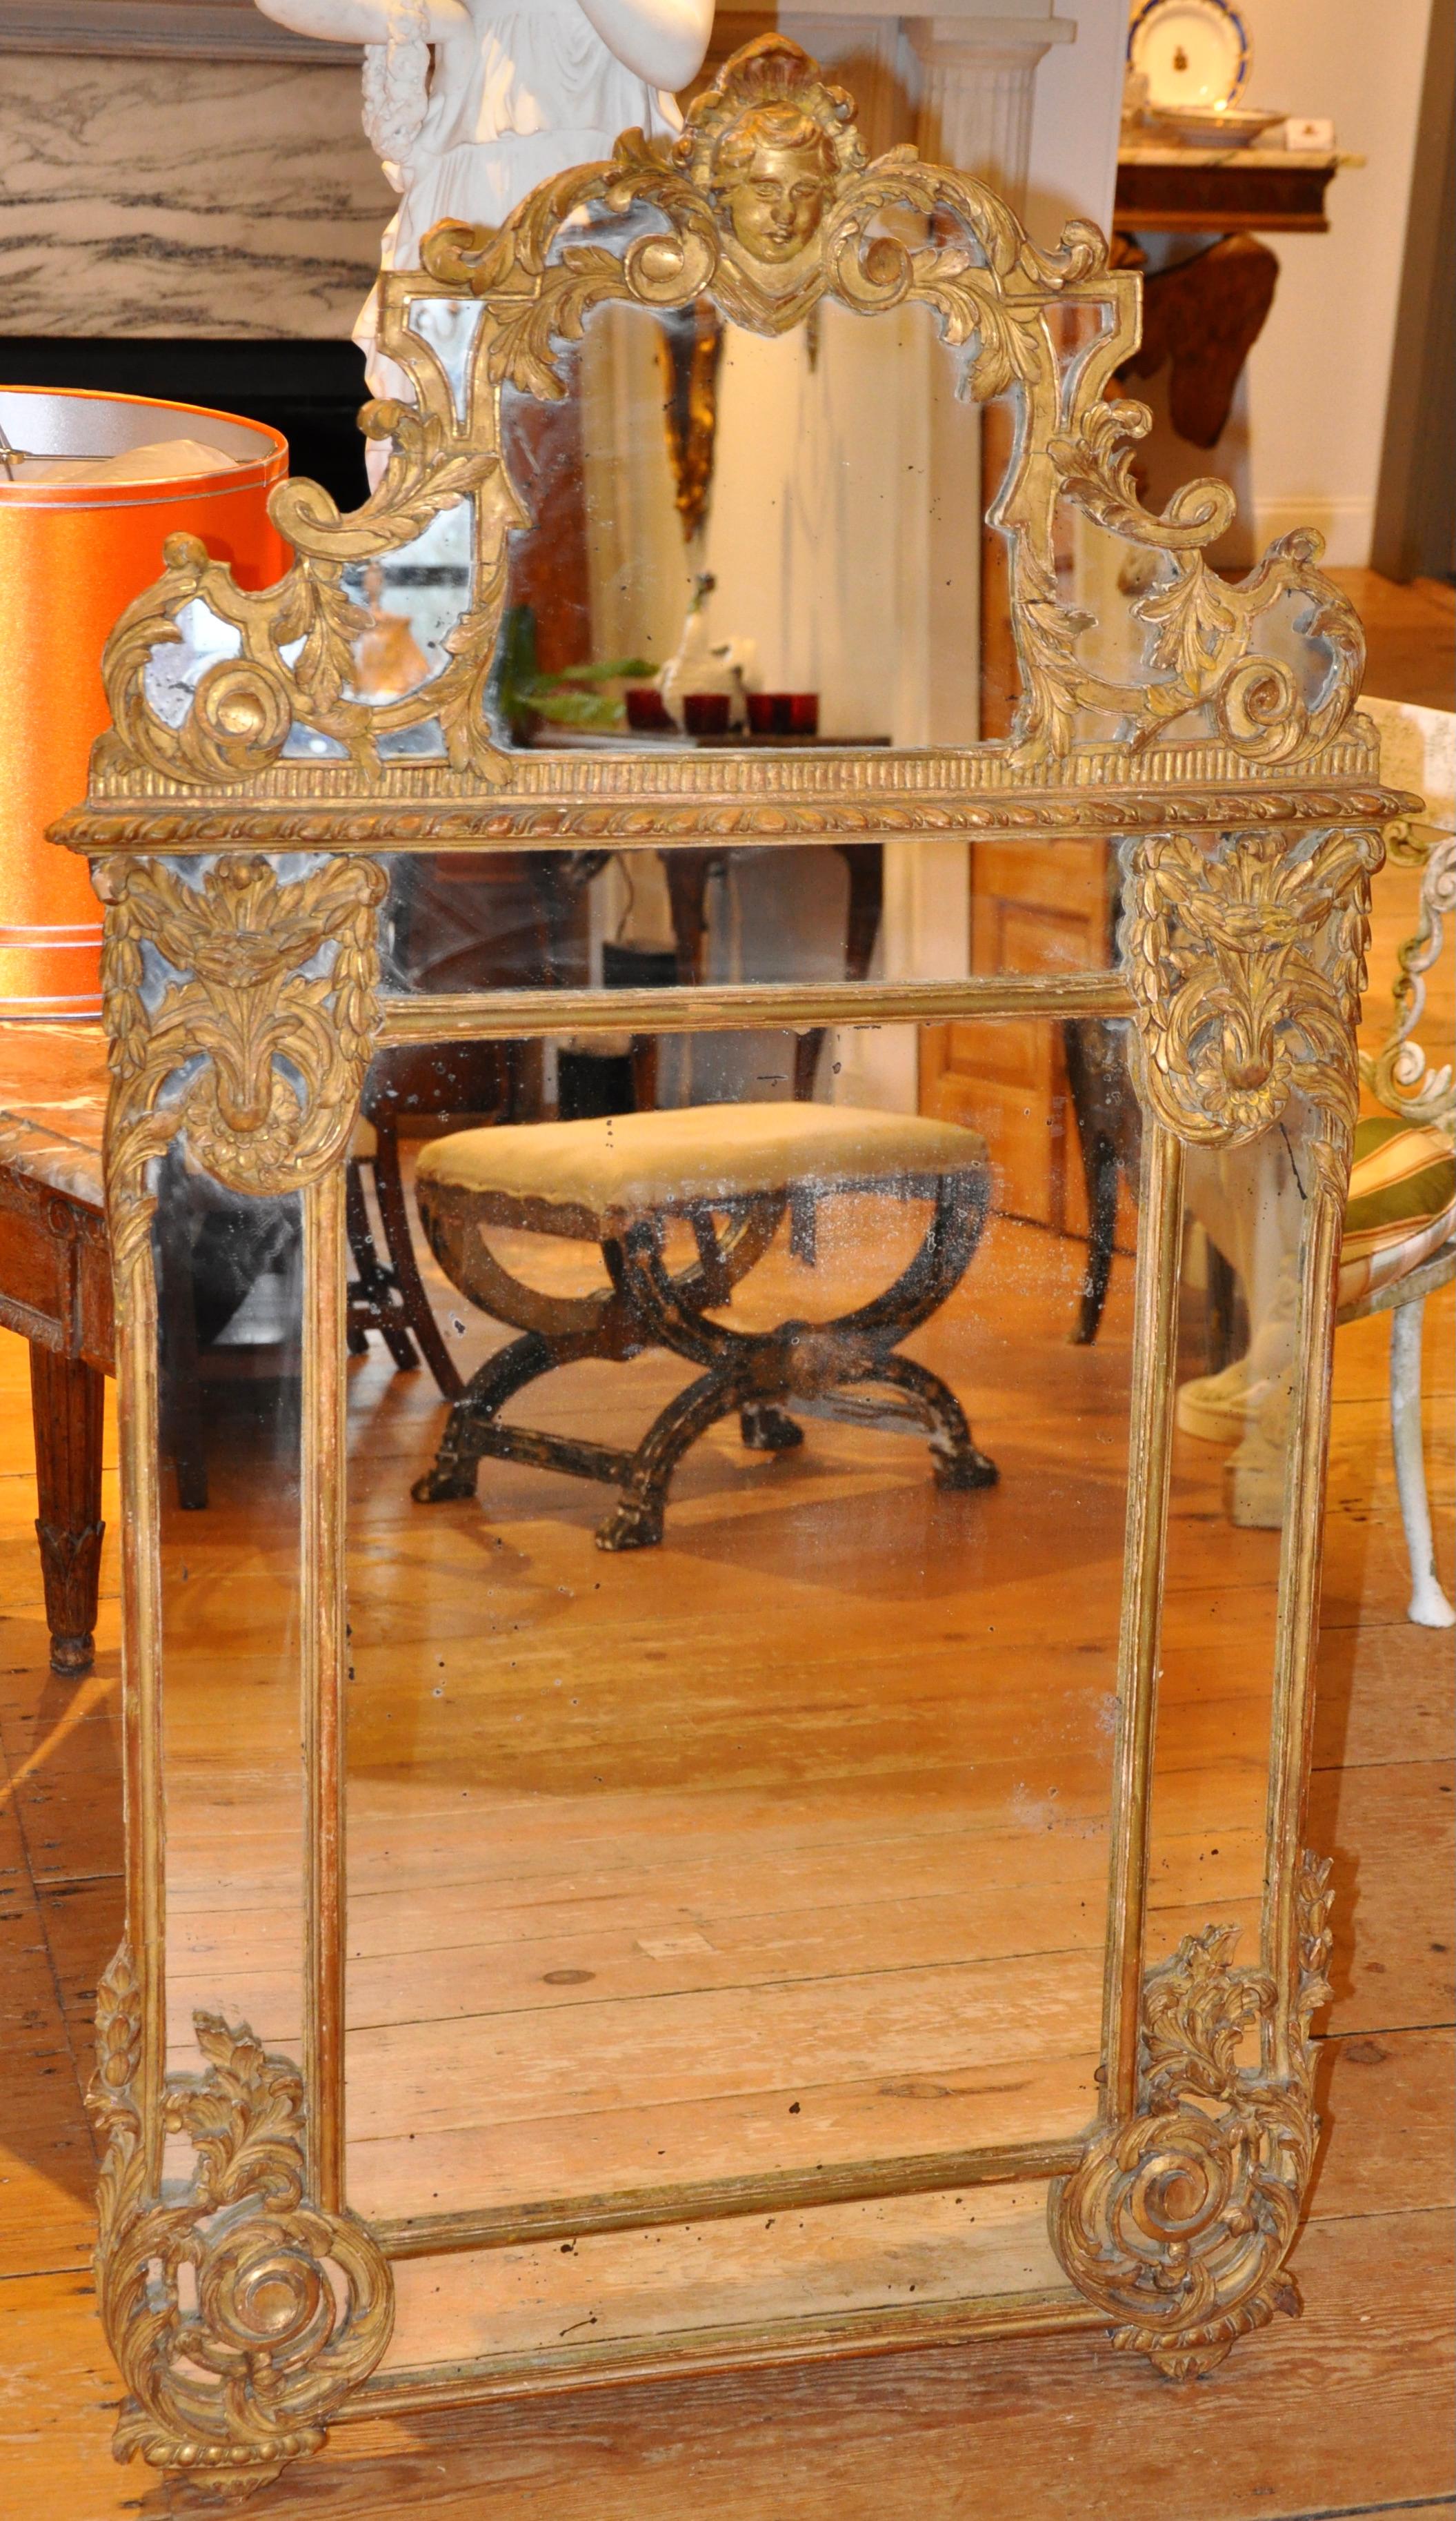 Geschnitzter und vergoldeter Spiegel im Regence-Stil mit Blattmotiv und gekröntem Gesicht

Originalglas und Vergoldung.